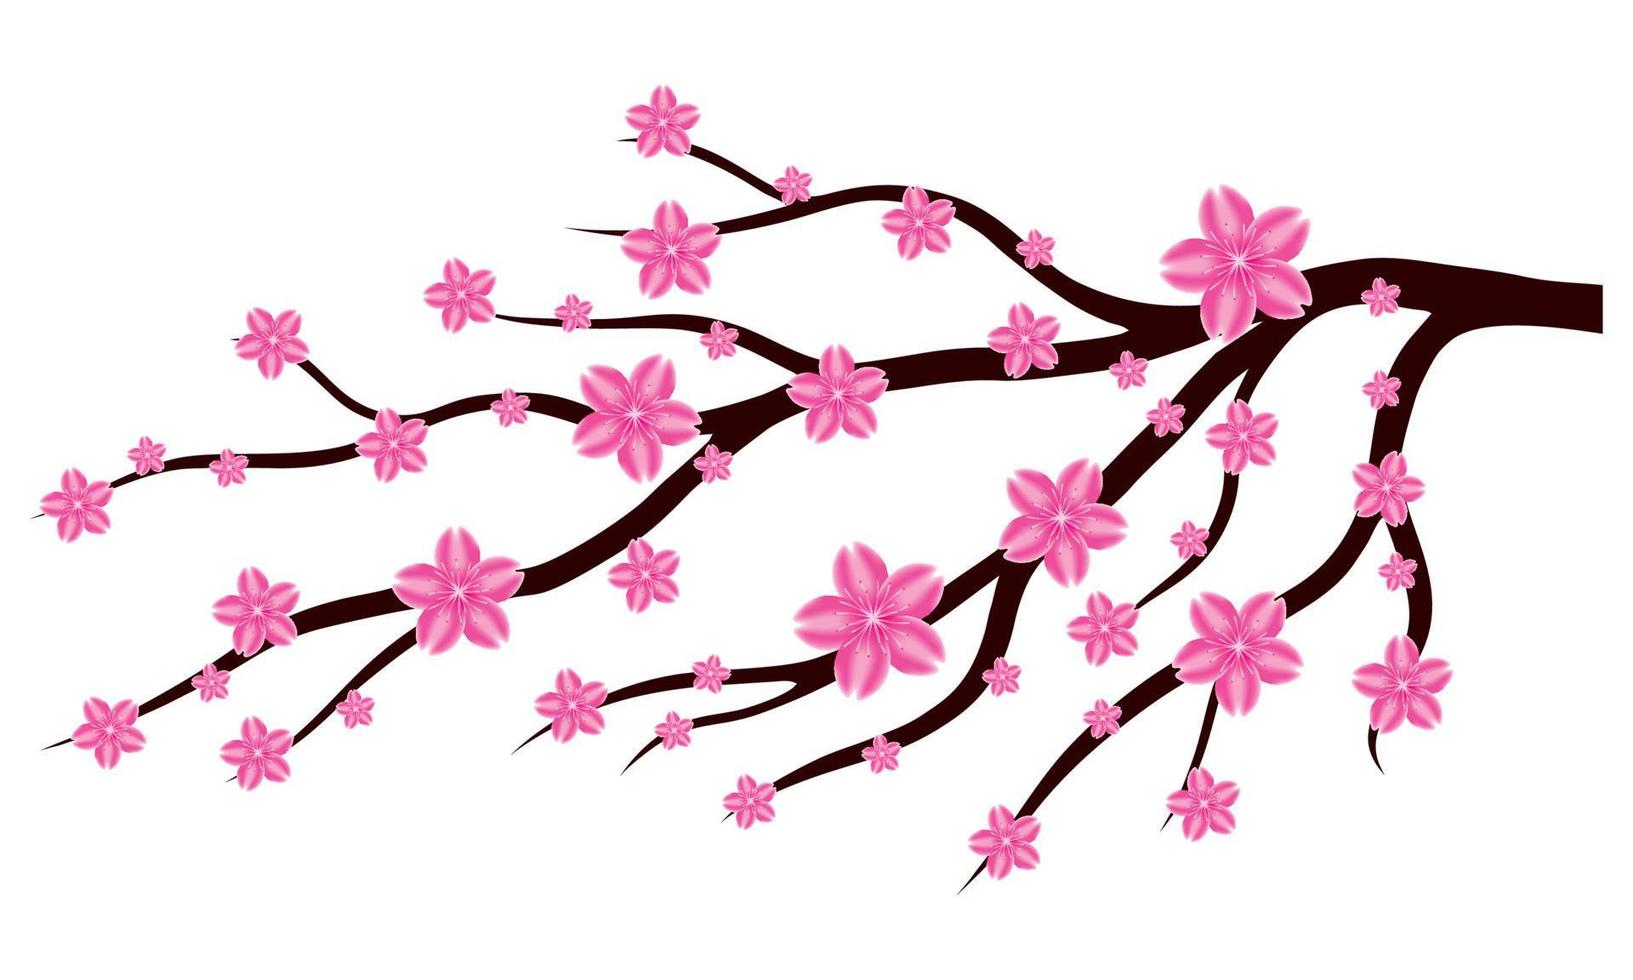 rama de flor de sakura o flor de cerezo sobre fondo blanco. adorno de diseño para imprimir en tarjetas, invitaciones vector